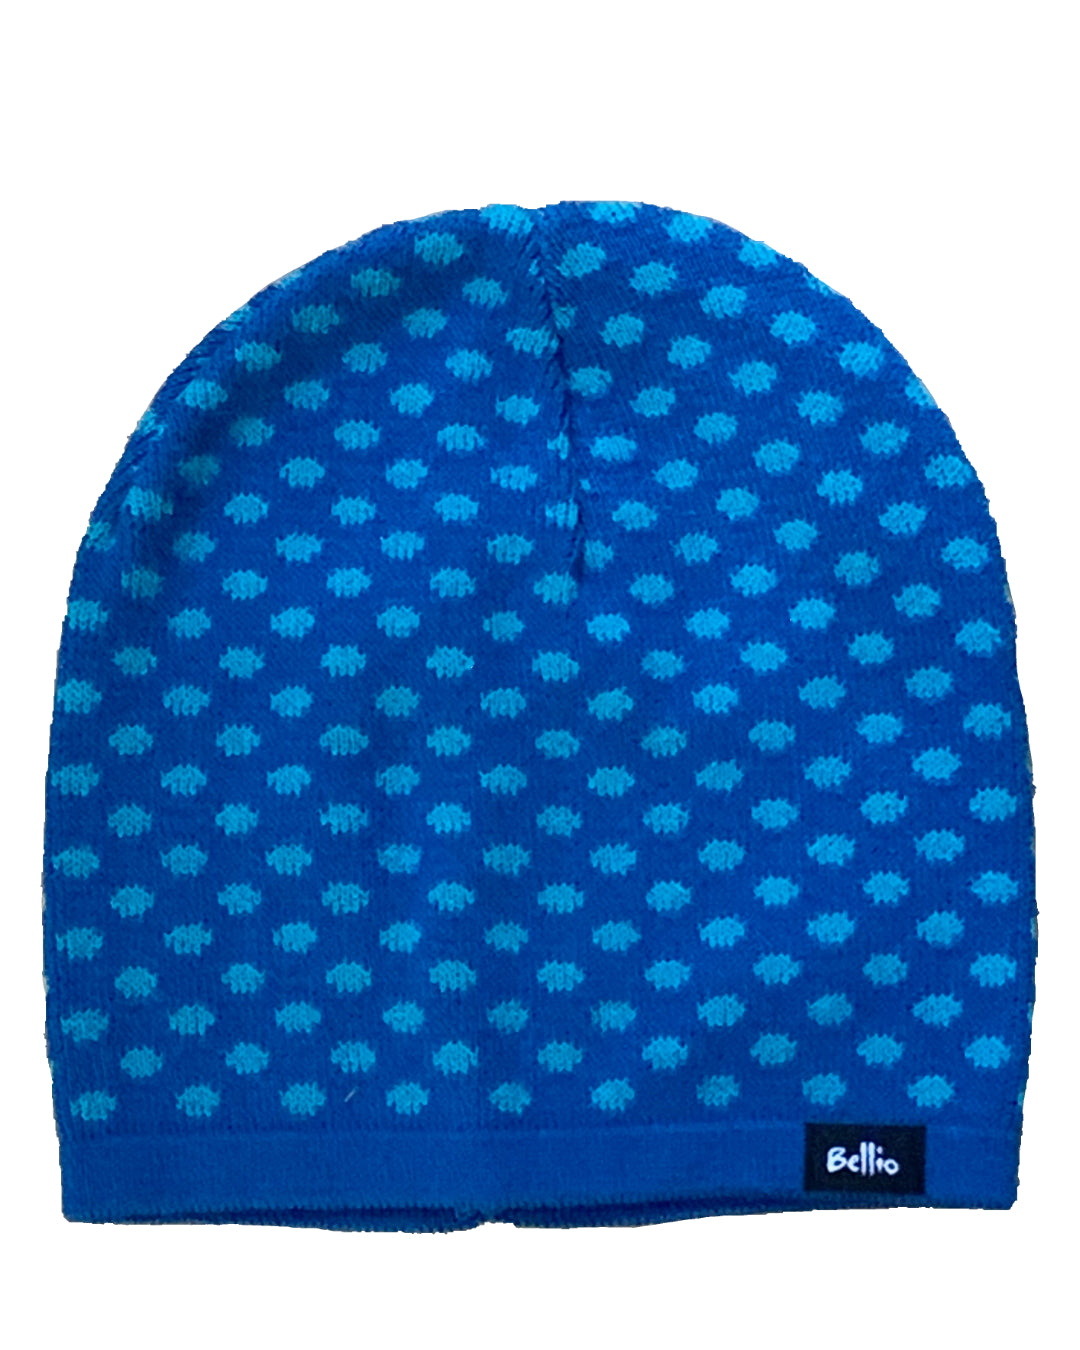 Blaue Mütze mit hellblauen Punkten für Kinder